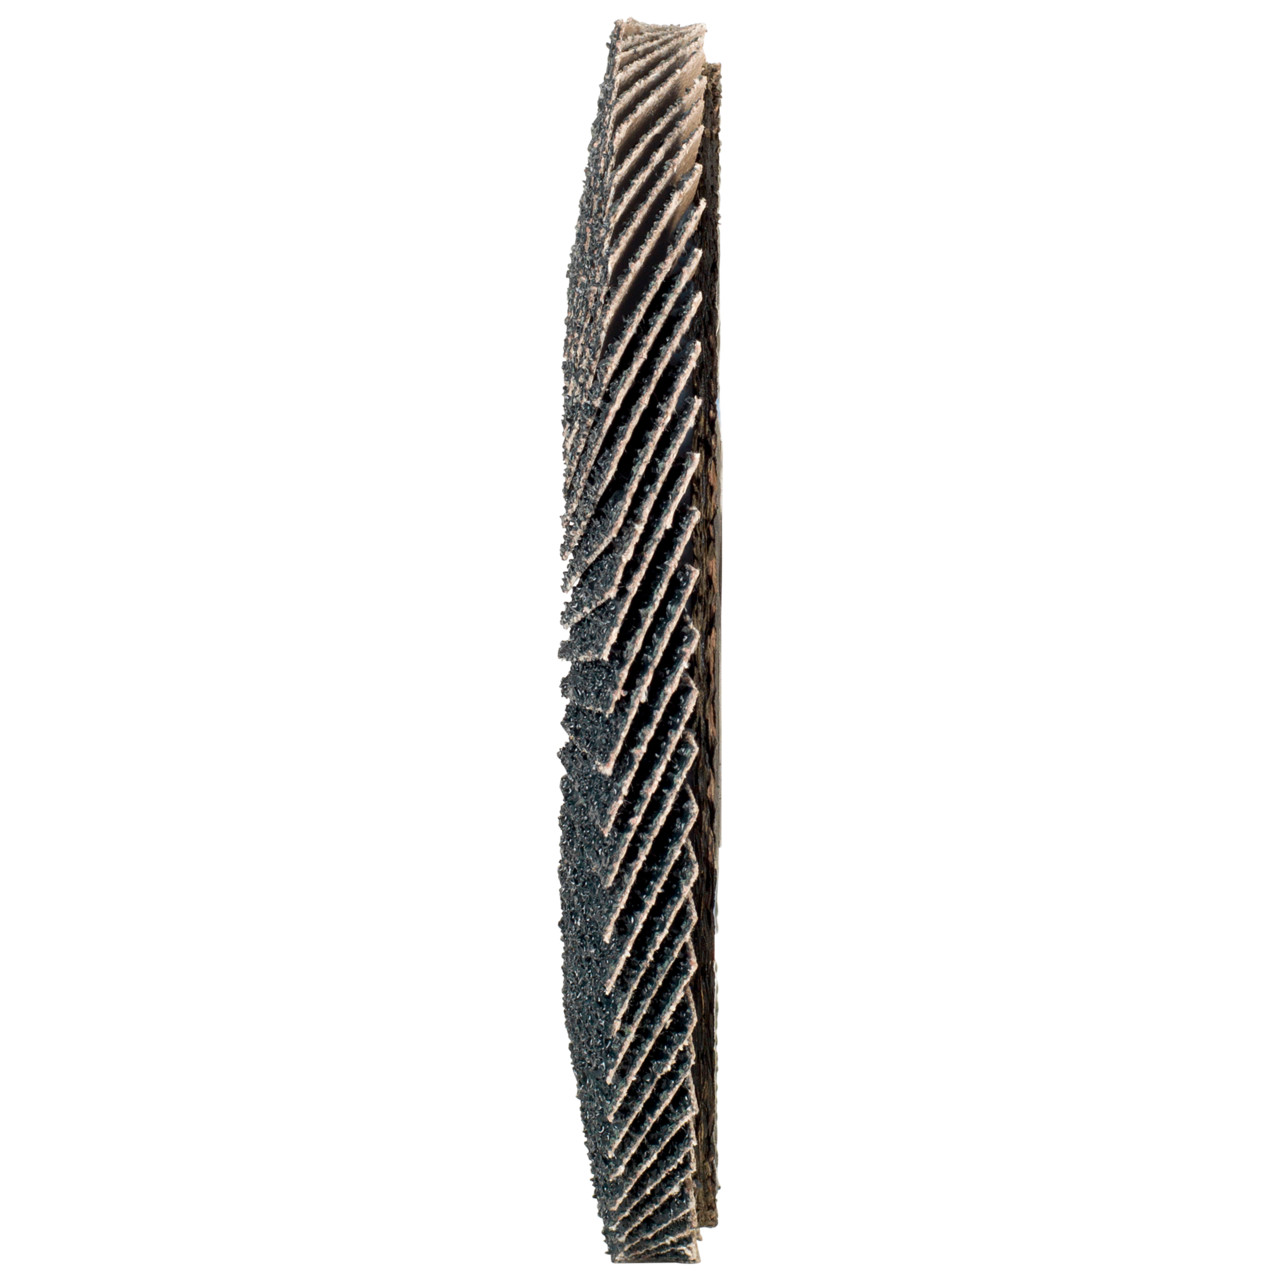 TYROLIT Fächerscheibe DxH 115x22,2 2in1 für Stahl & Edelstahl, P120, Form: 27A - gekröpfte Ausführung (Glasfaserträgerkörperausführung), Art. 643803